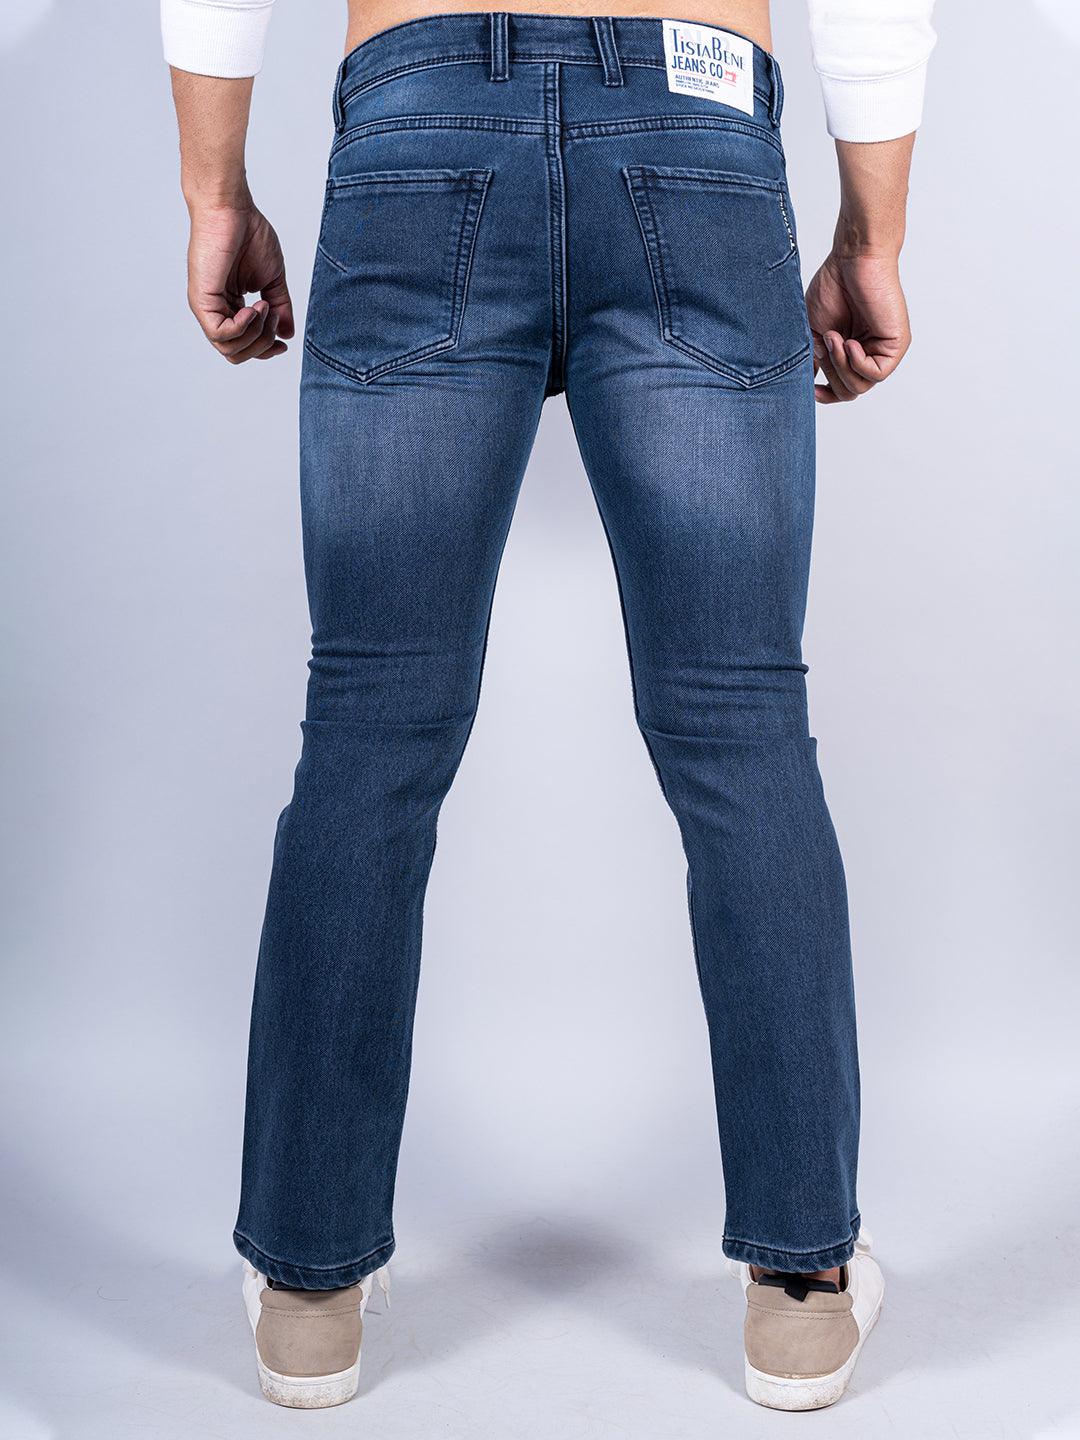 Buy Blue Jeans for Men by REA-LIZE Online | Ajio.com